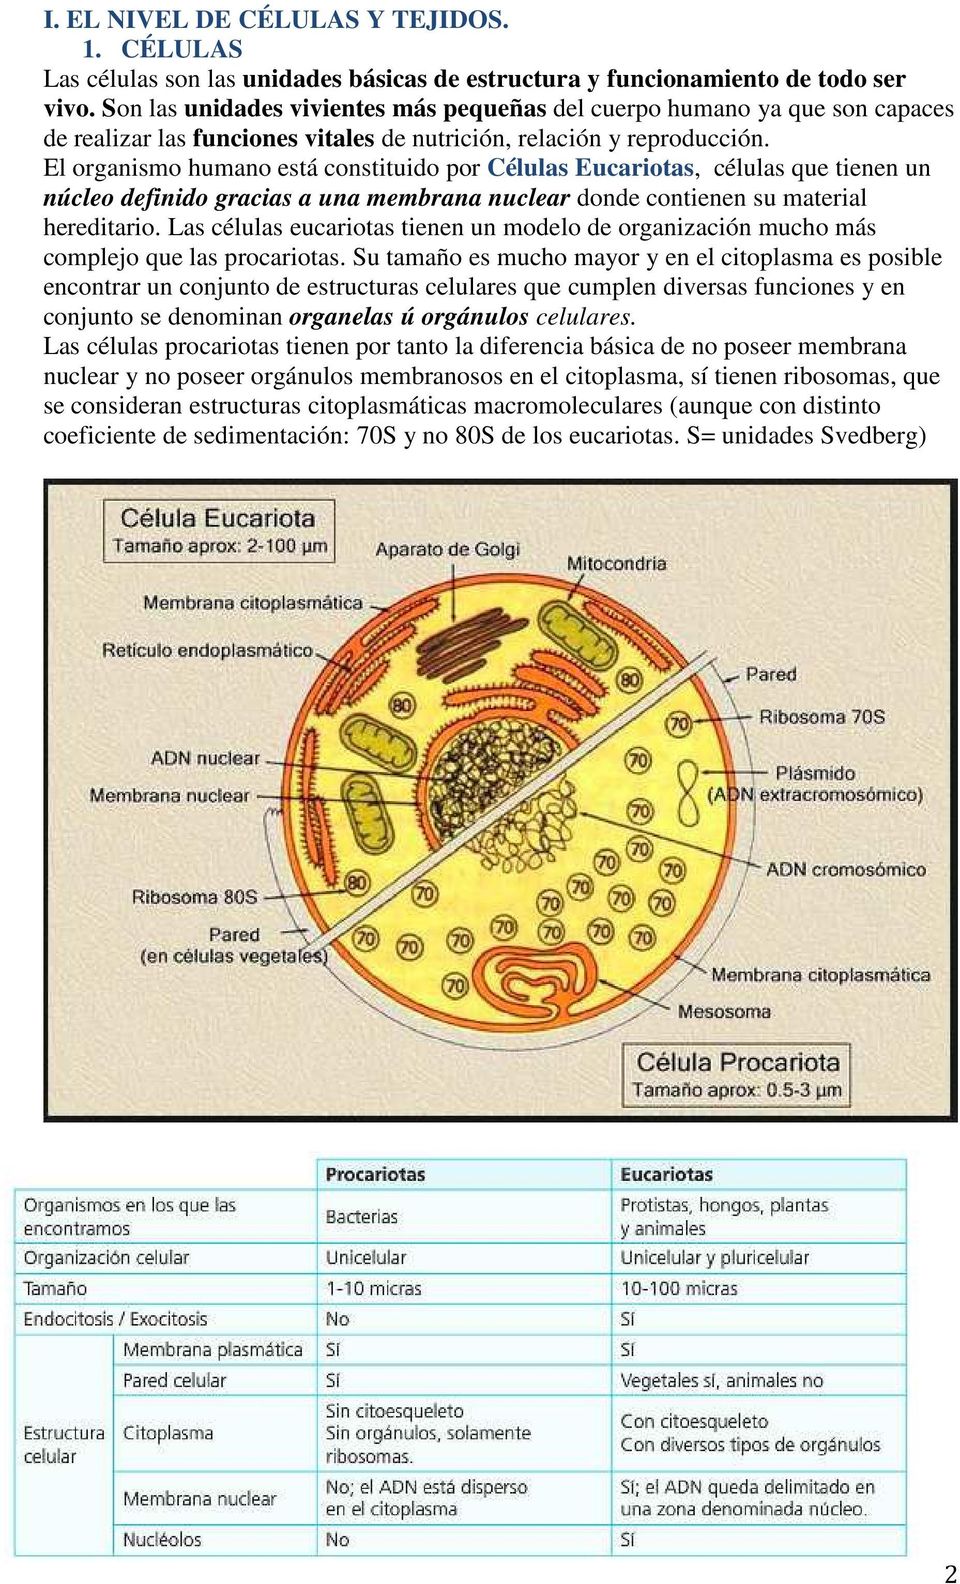 El organismo humano está constituido por Células Eucariotas, células que tienen un núcleo definido gracias a una membrana nuclear donde contienen su material hereditario.